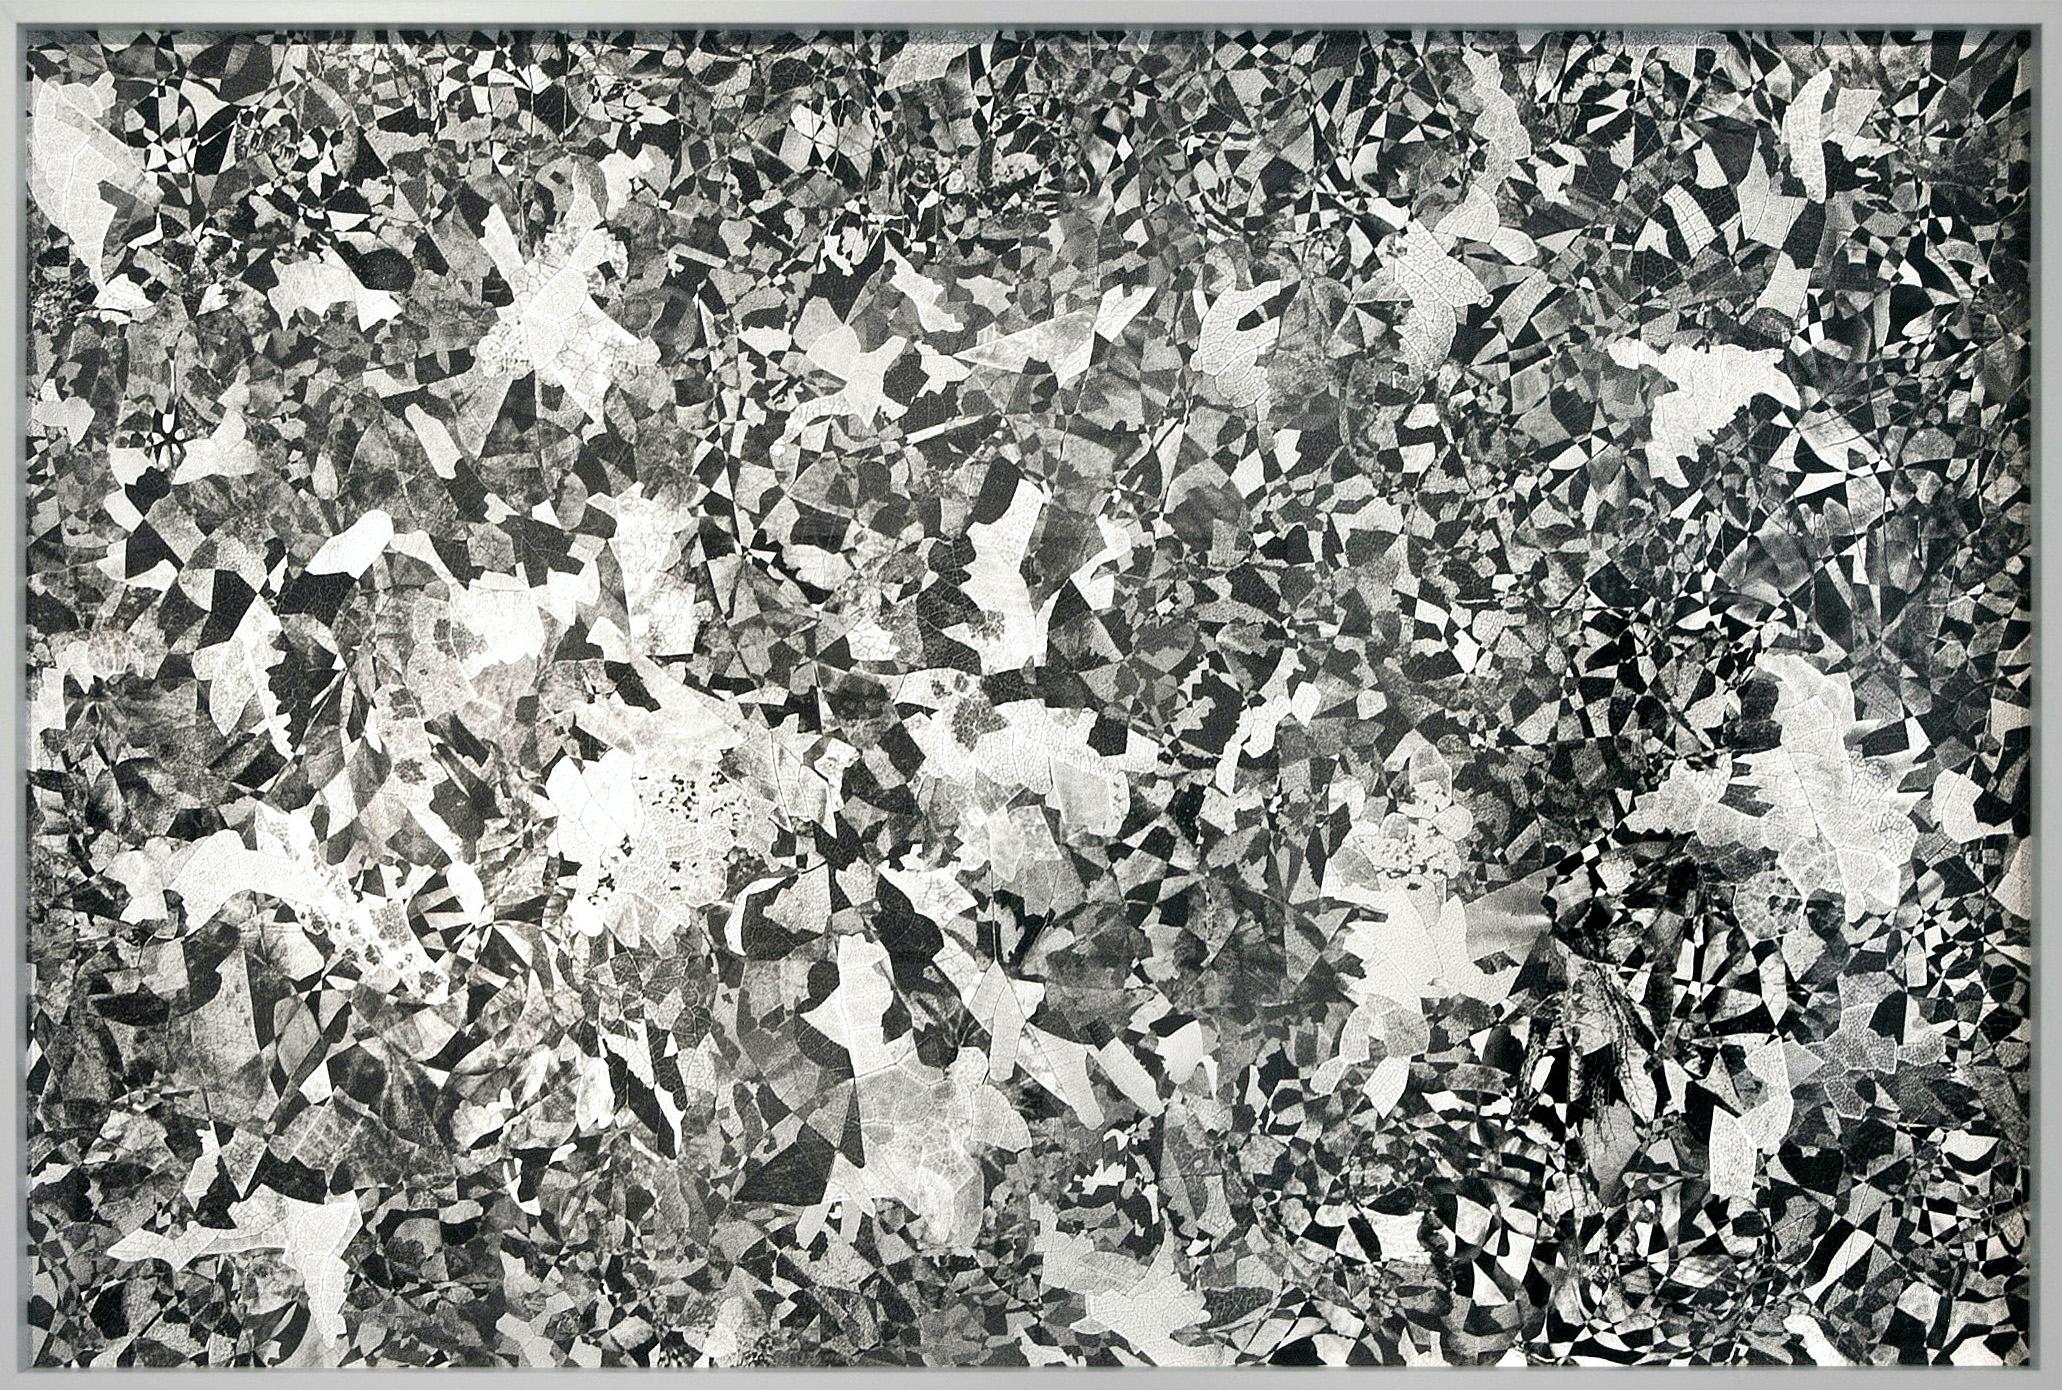 Hubert Blanz Black and White Photograph - Feldforschung 05 - Contemporary Abstract Diamond Texture Photograph